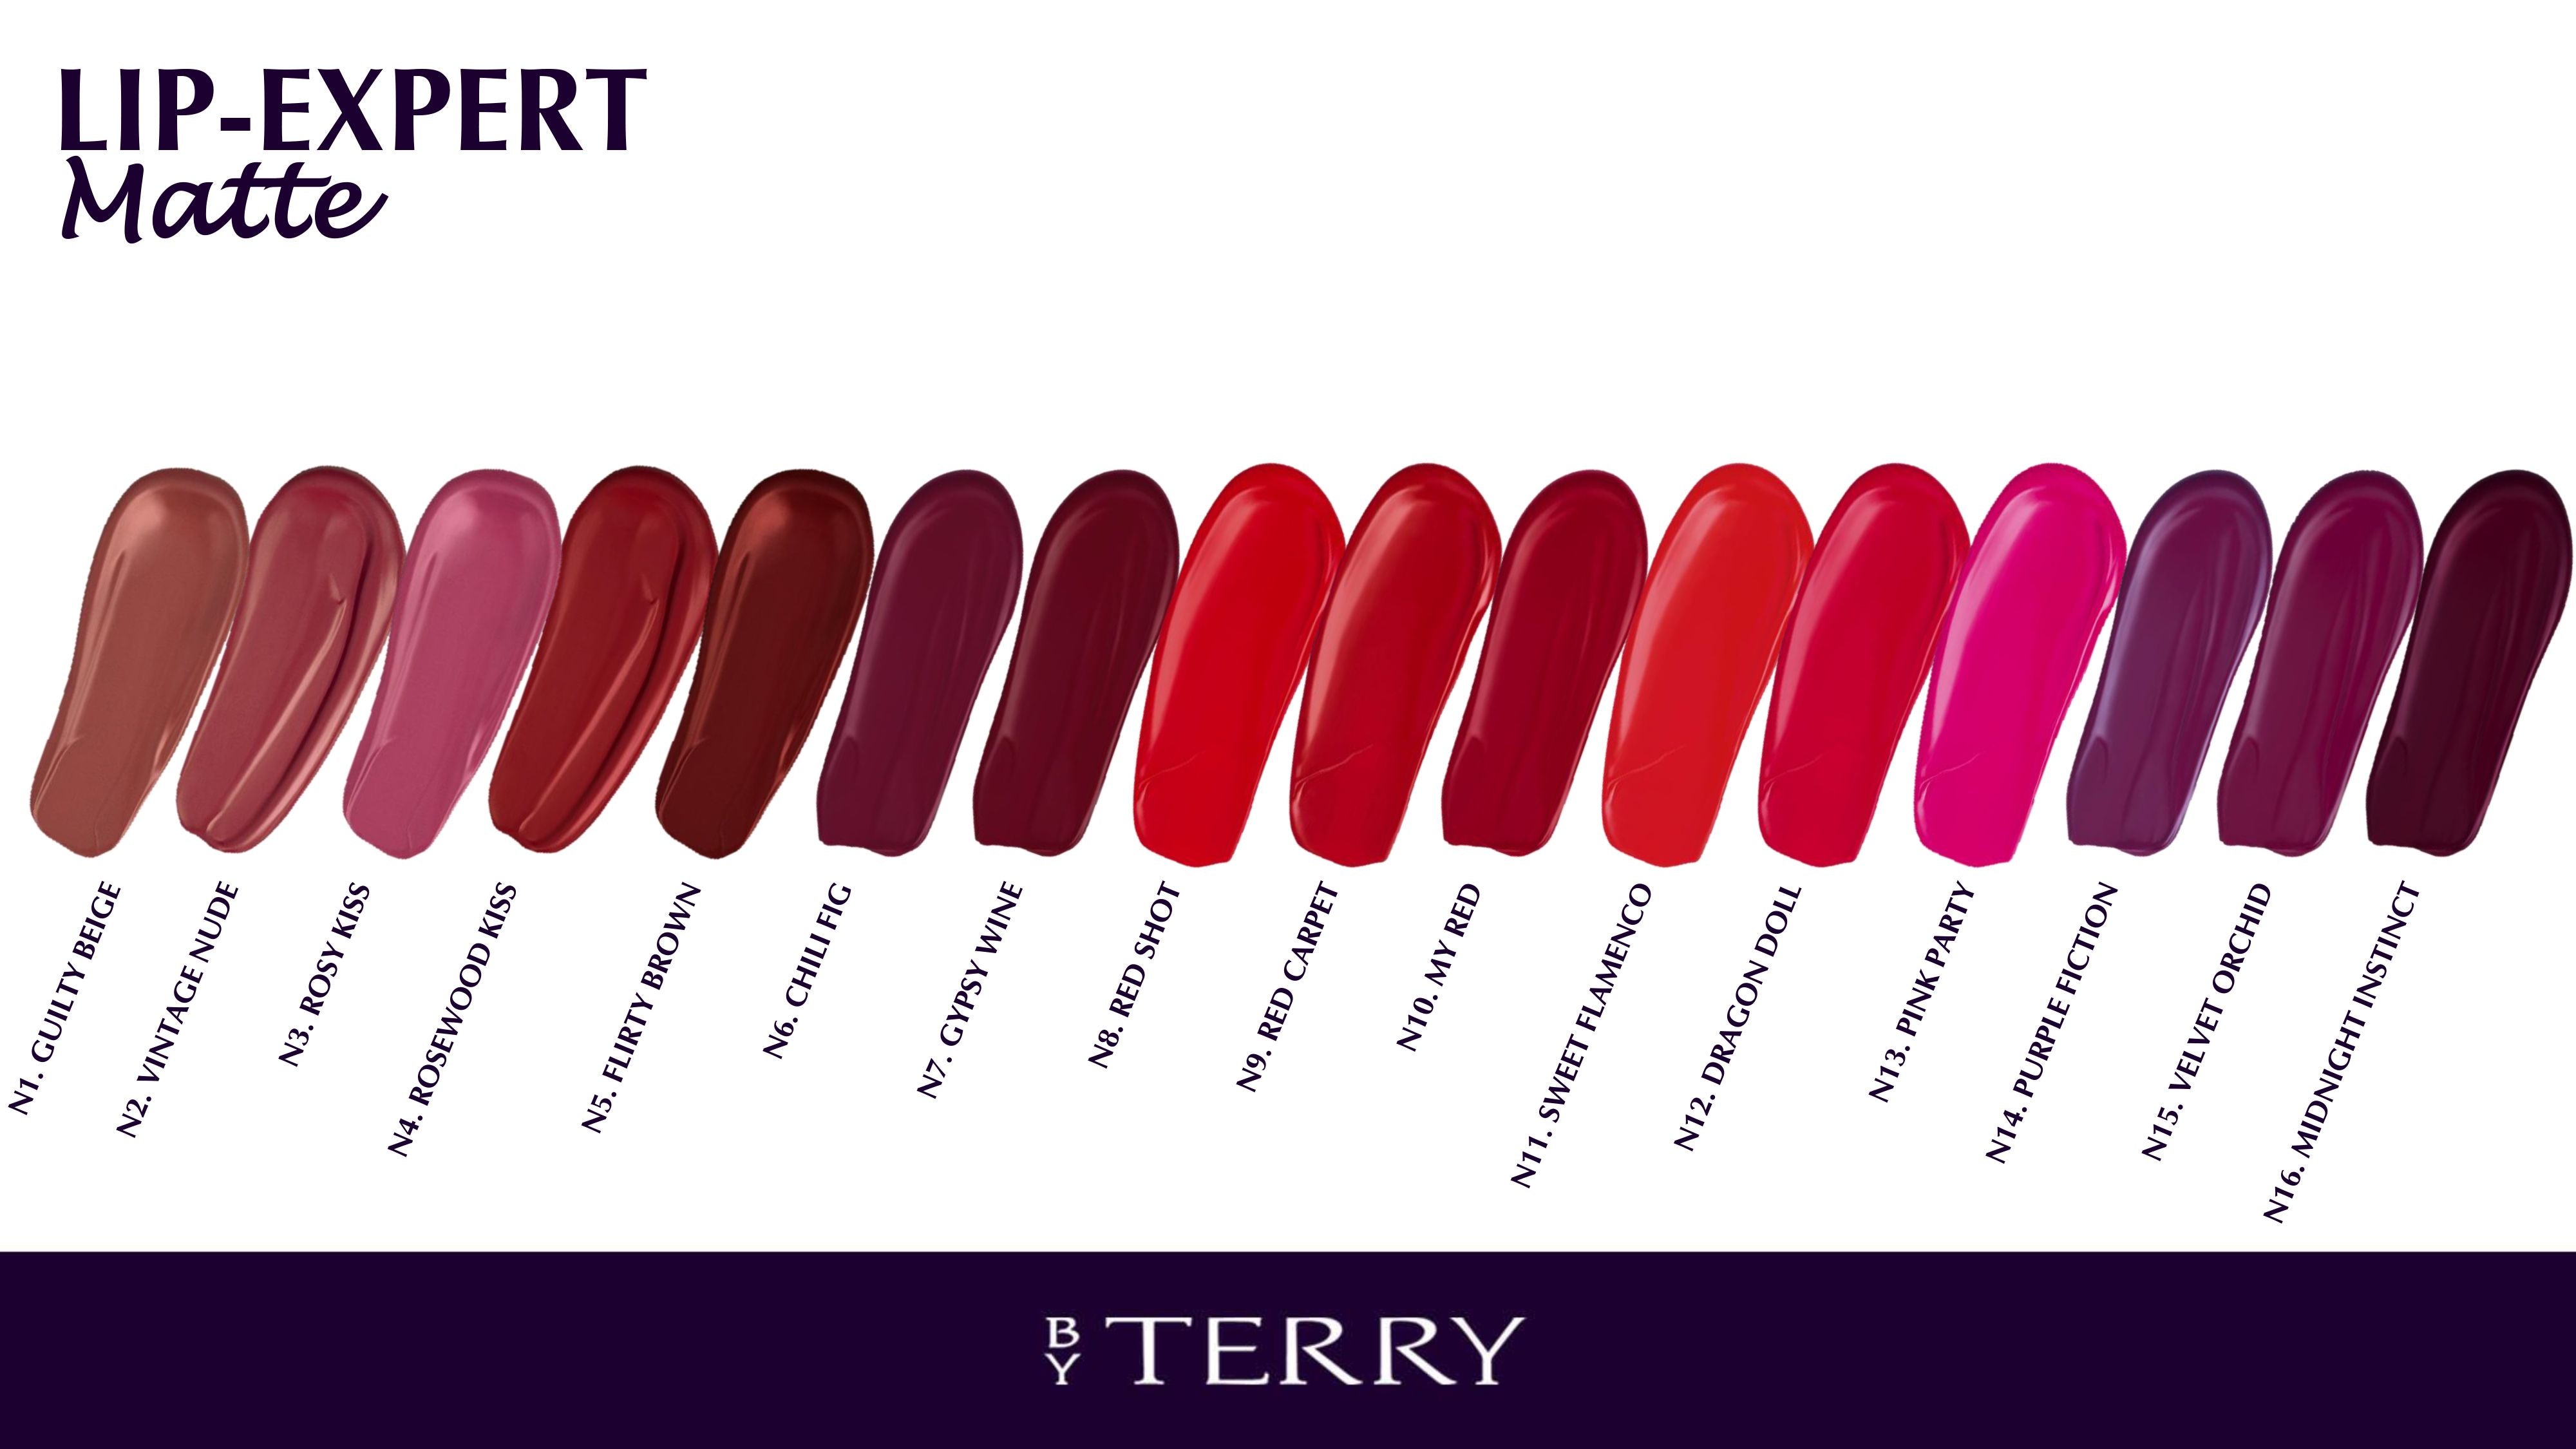 By Terry Lip-Expert Matte Liquid Lipstick - 5 - Flirty Brown - Final ...